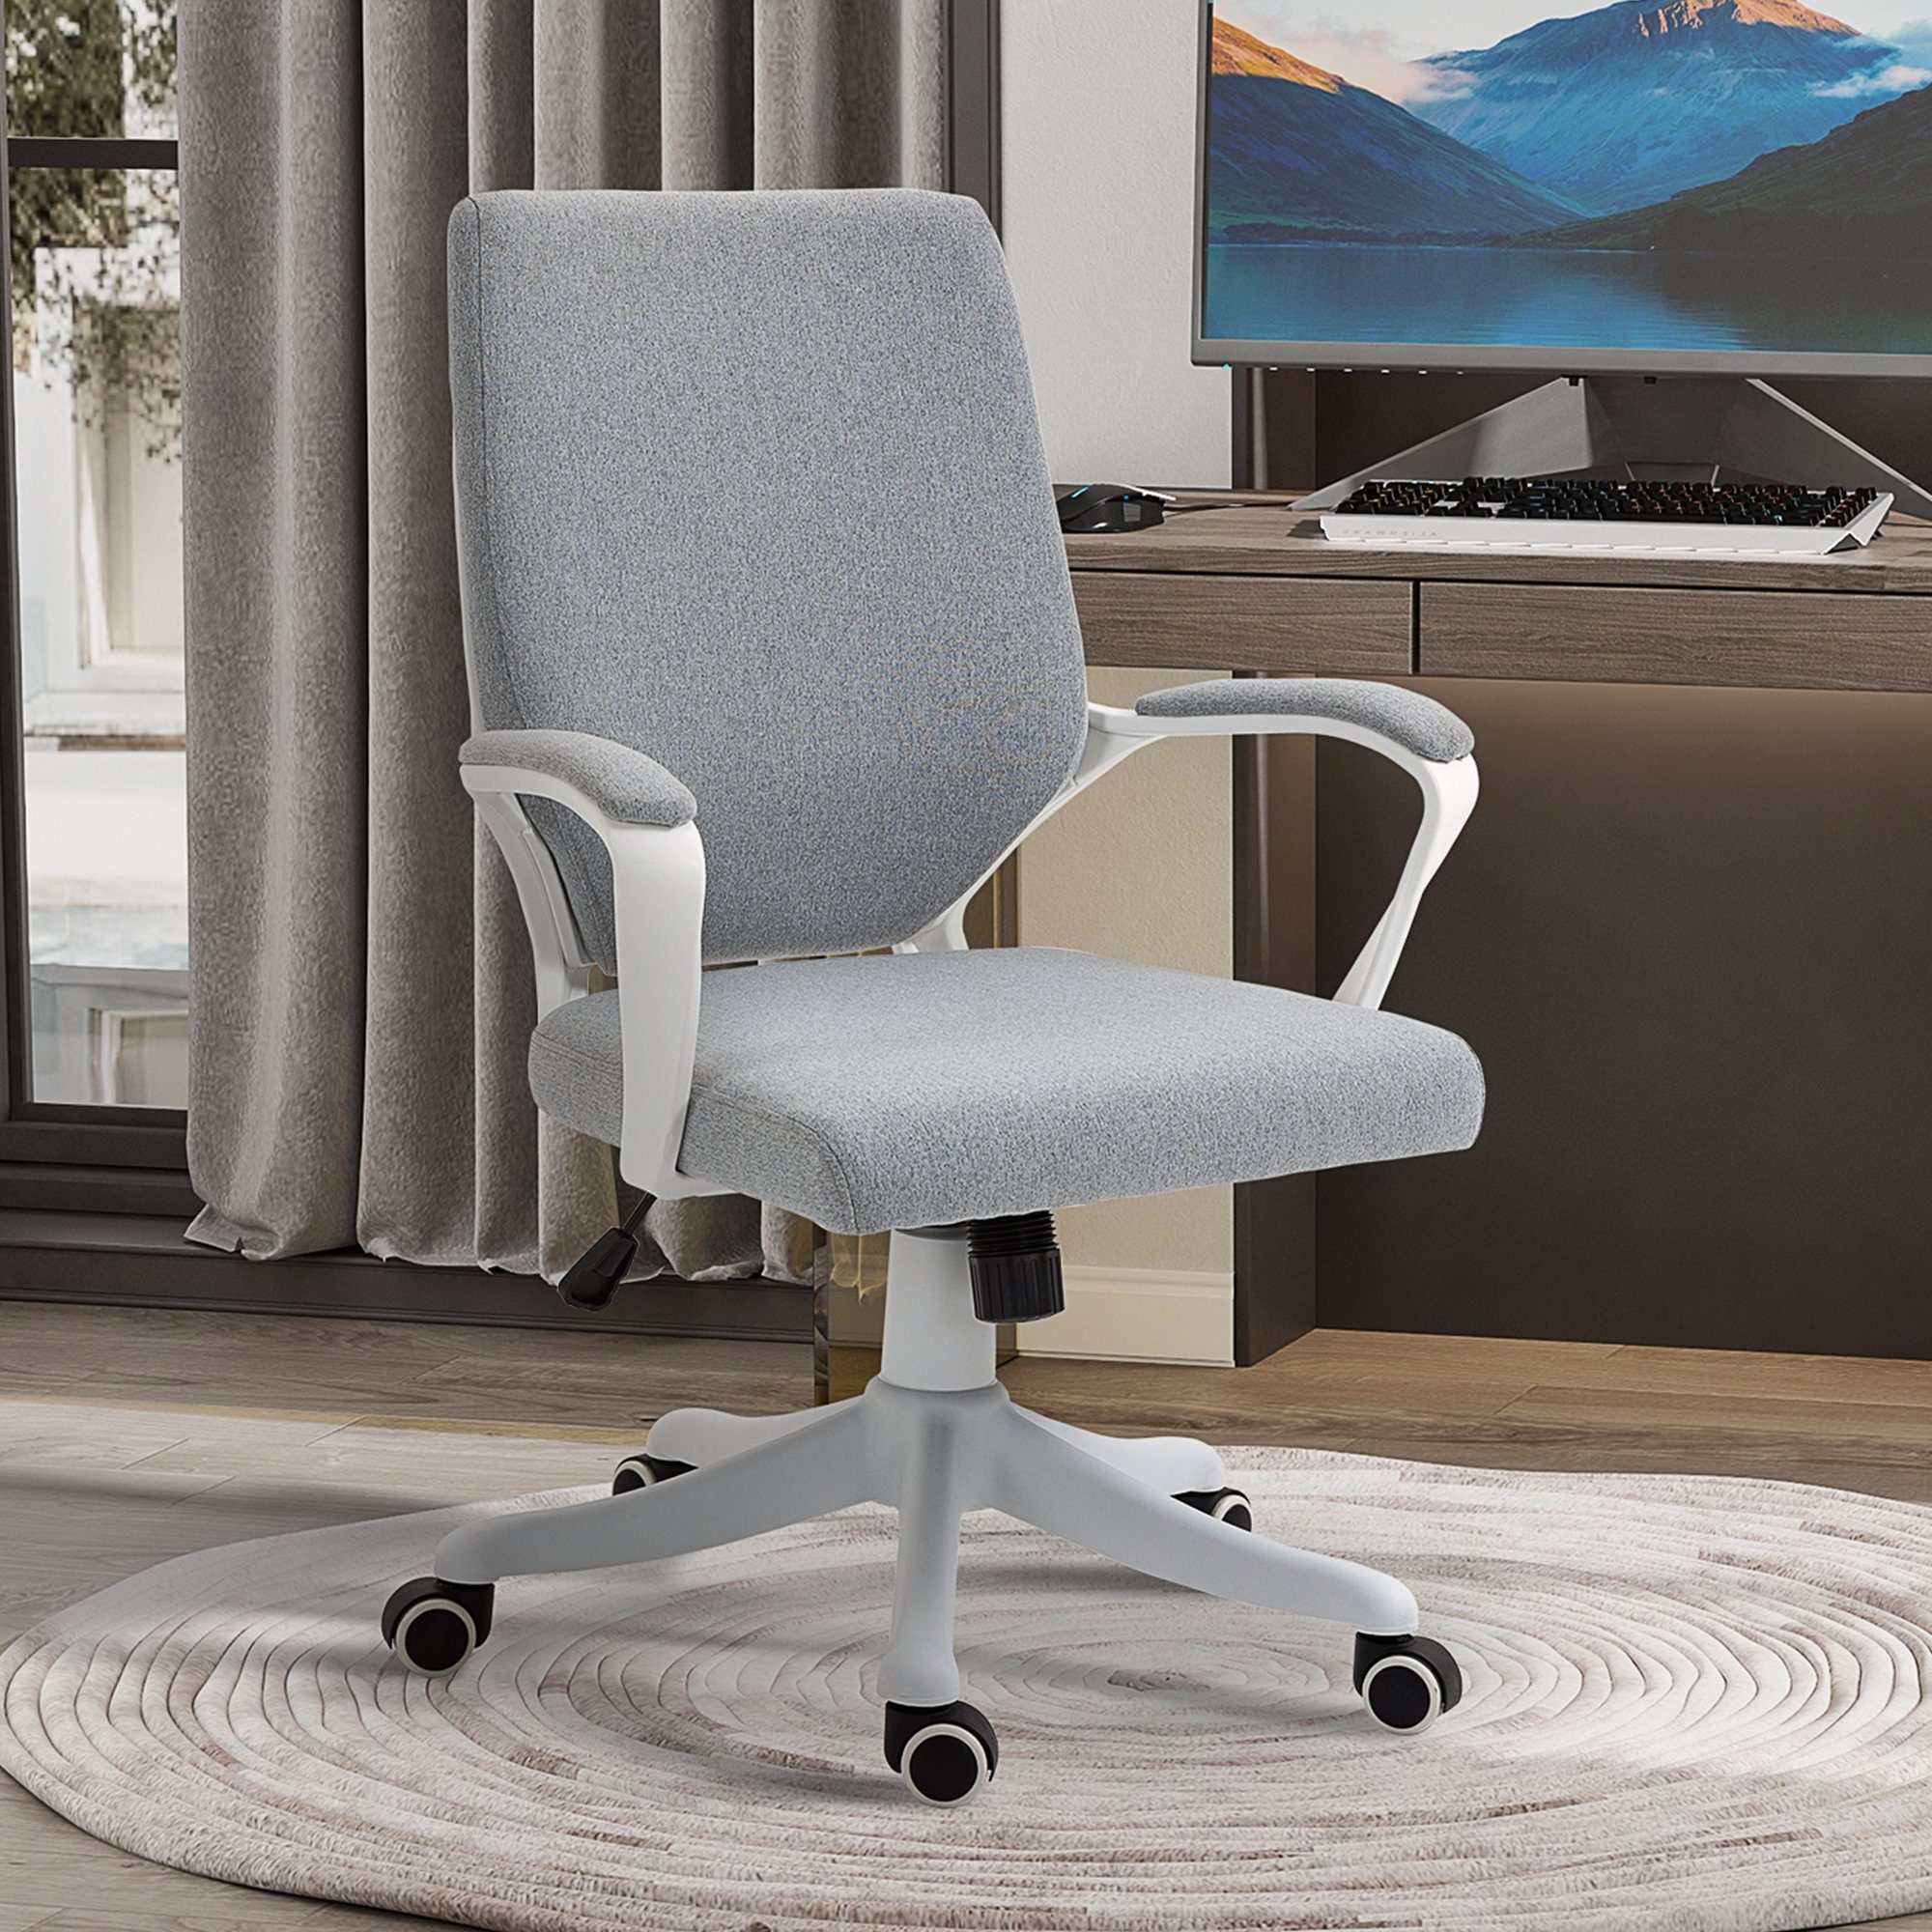 Wippenfunktion (set, Vinsetto Verstellbare Schreibtischstuhl Sitzhöhe Bürostuhl Home-Office-Stuhl 1 St), mit